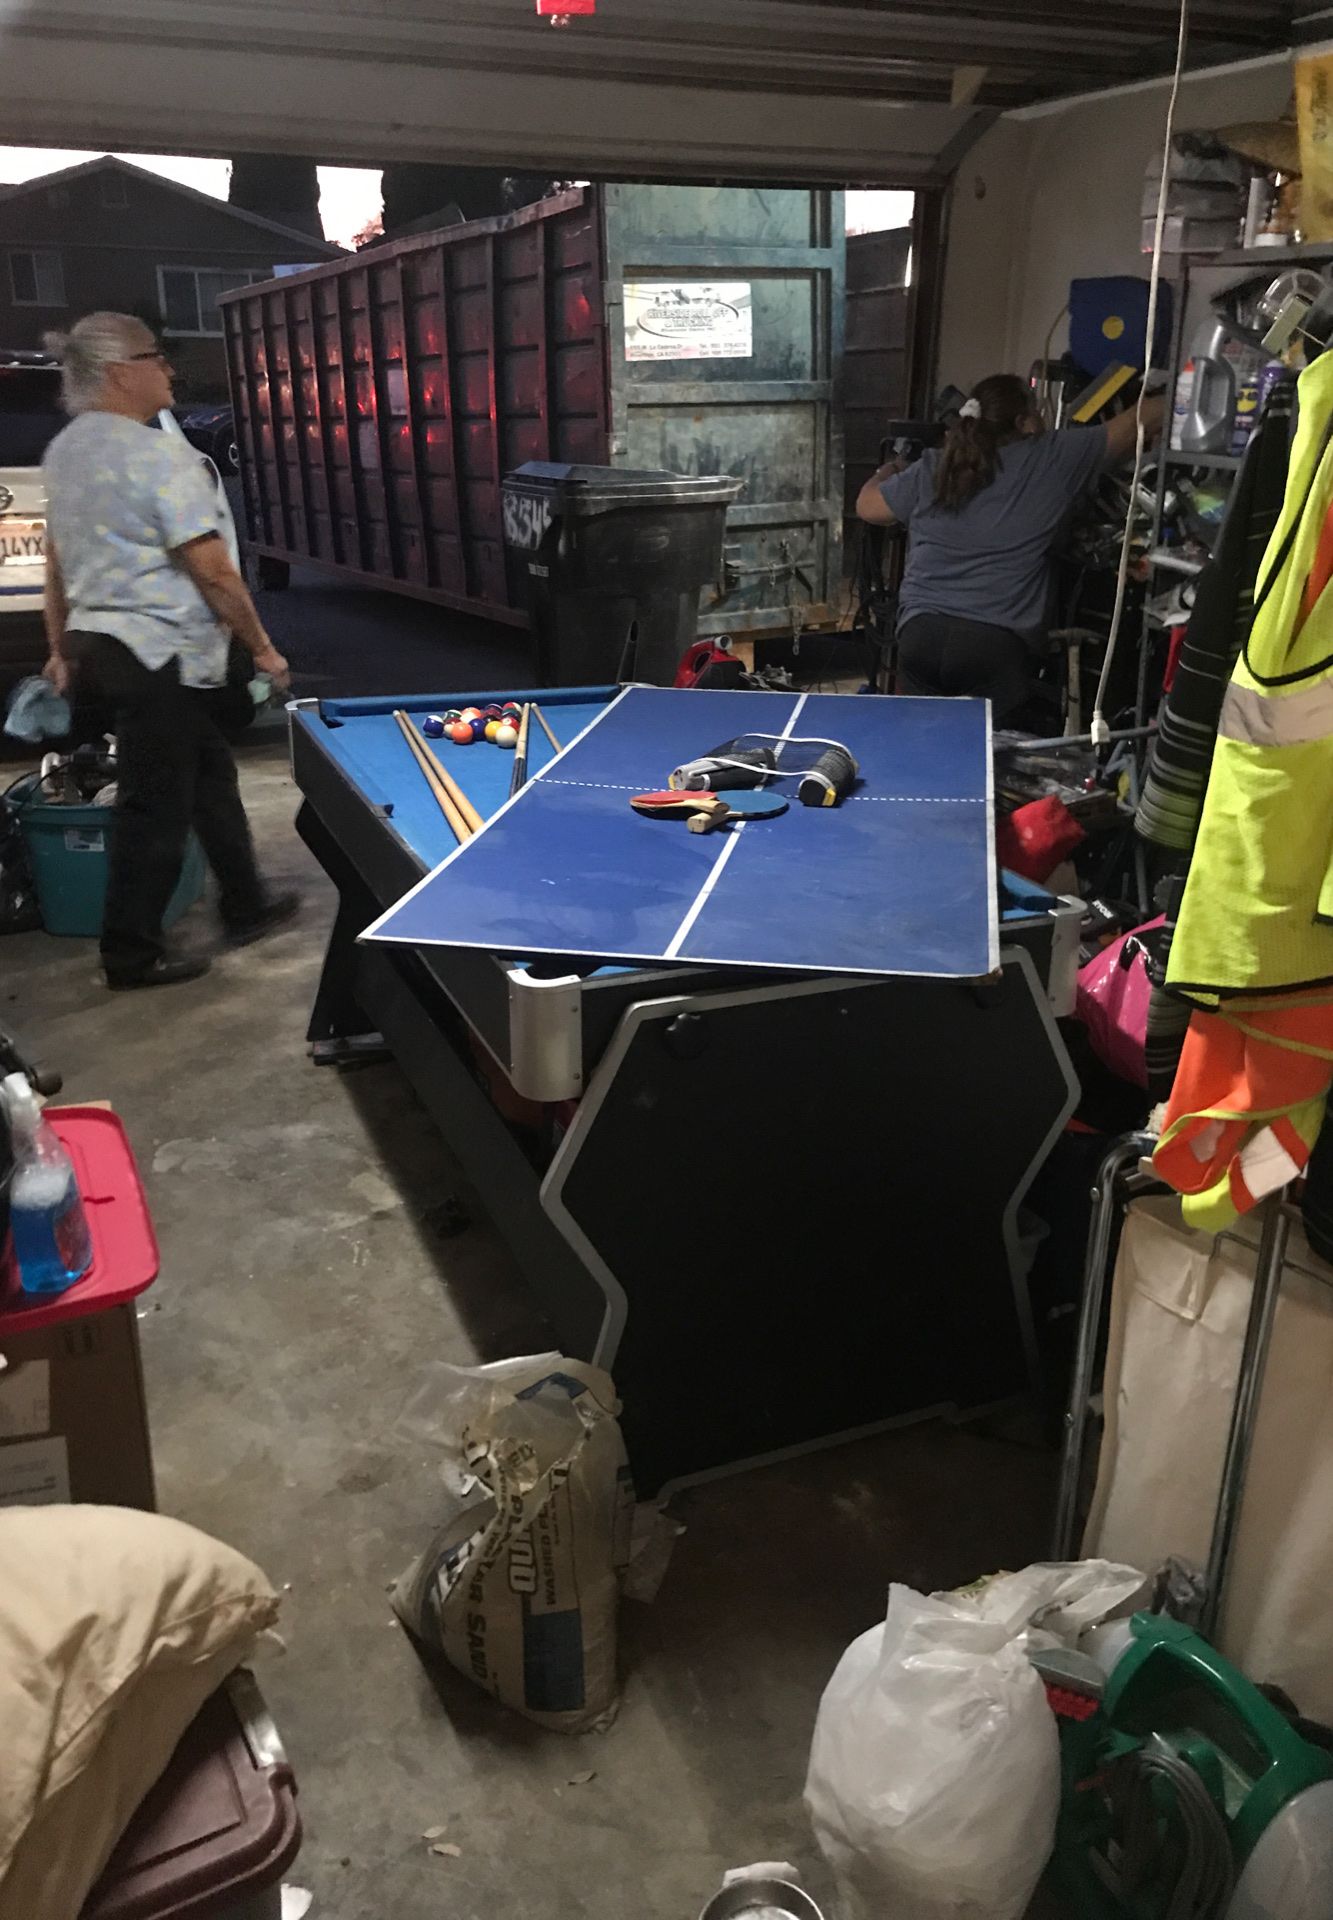 Ping pong / pool / air hockey table